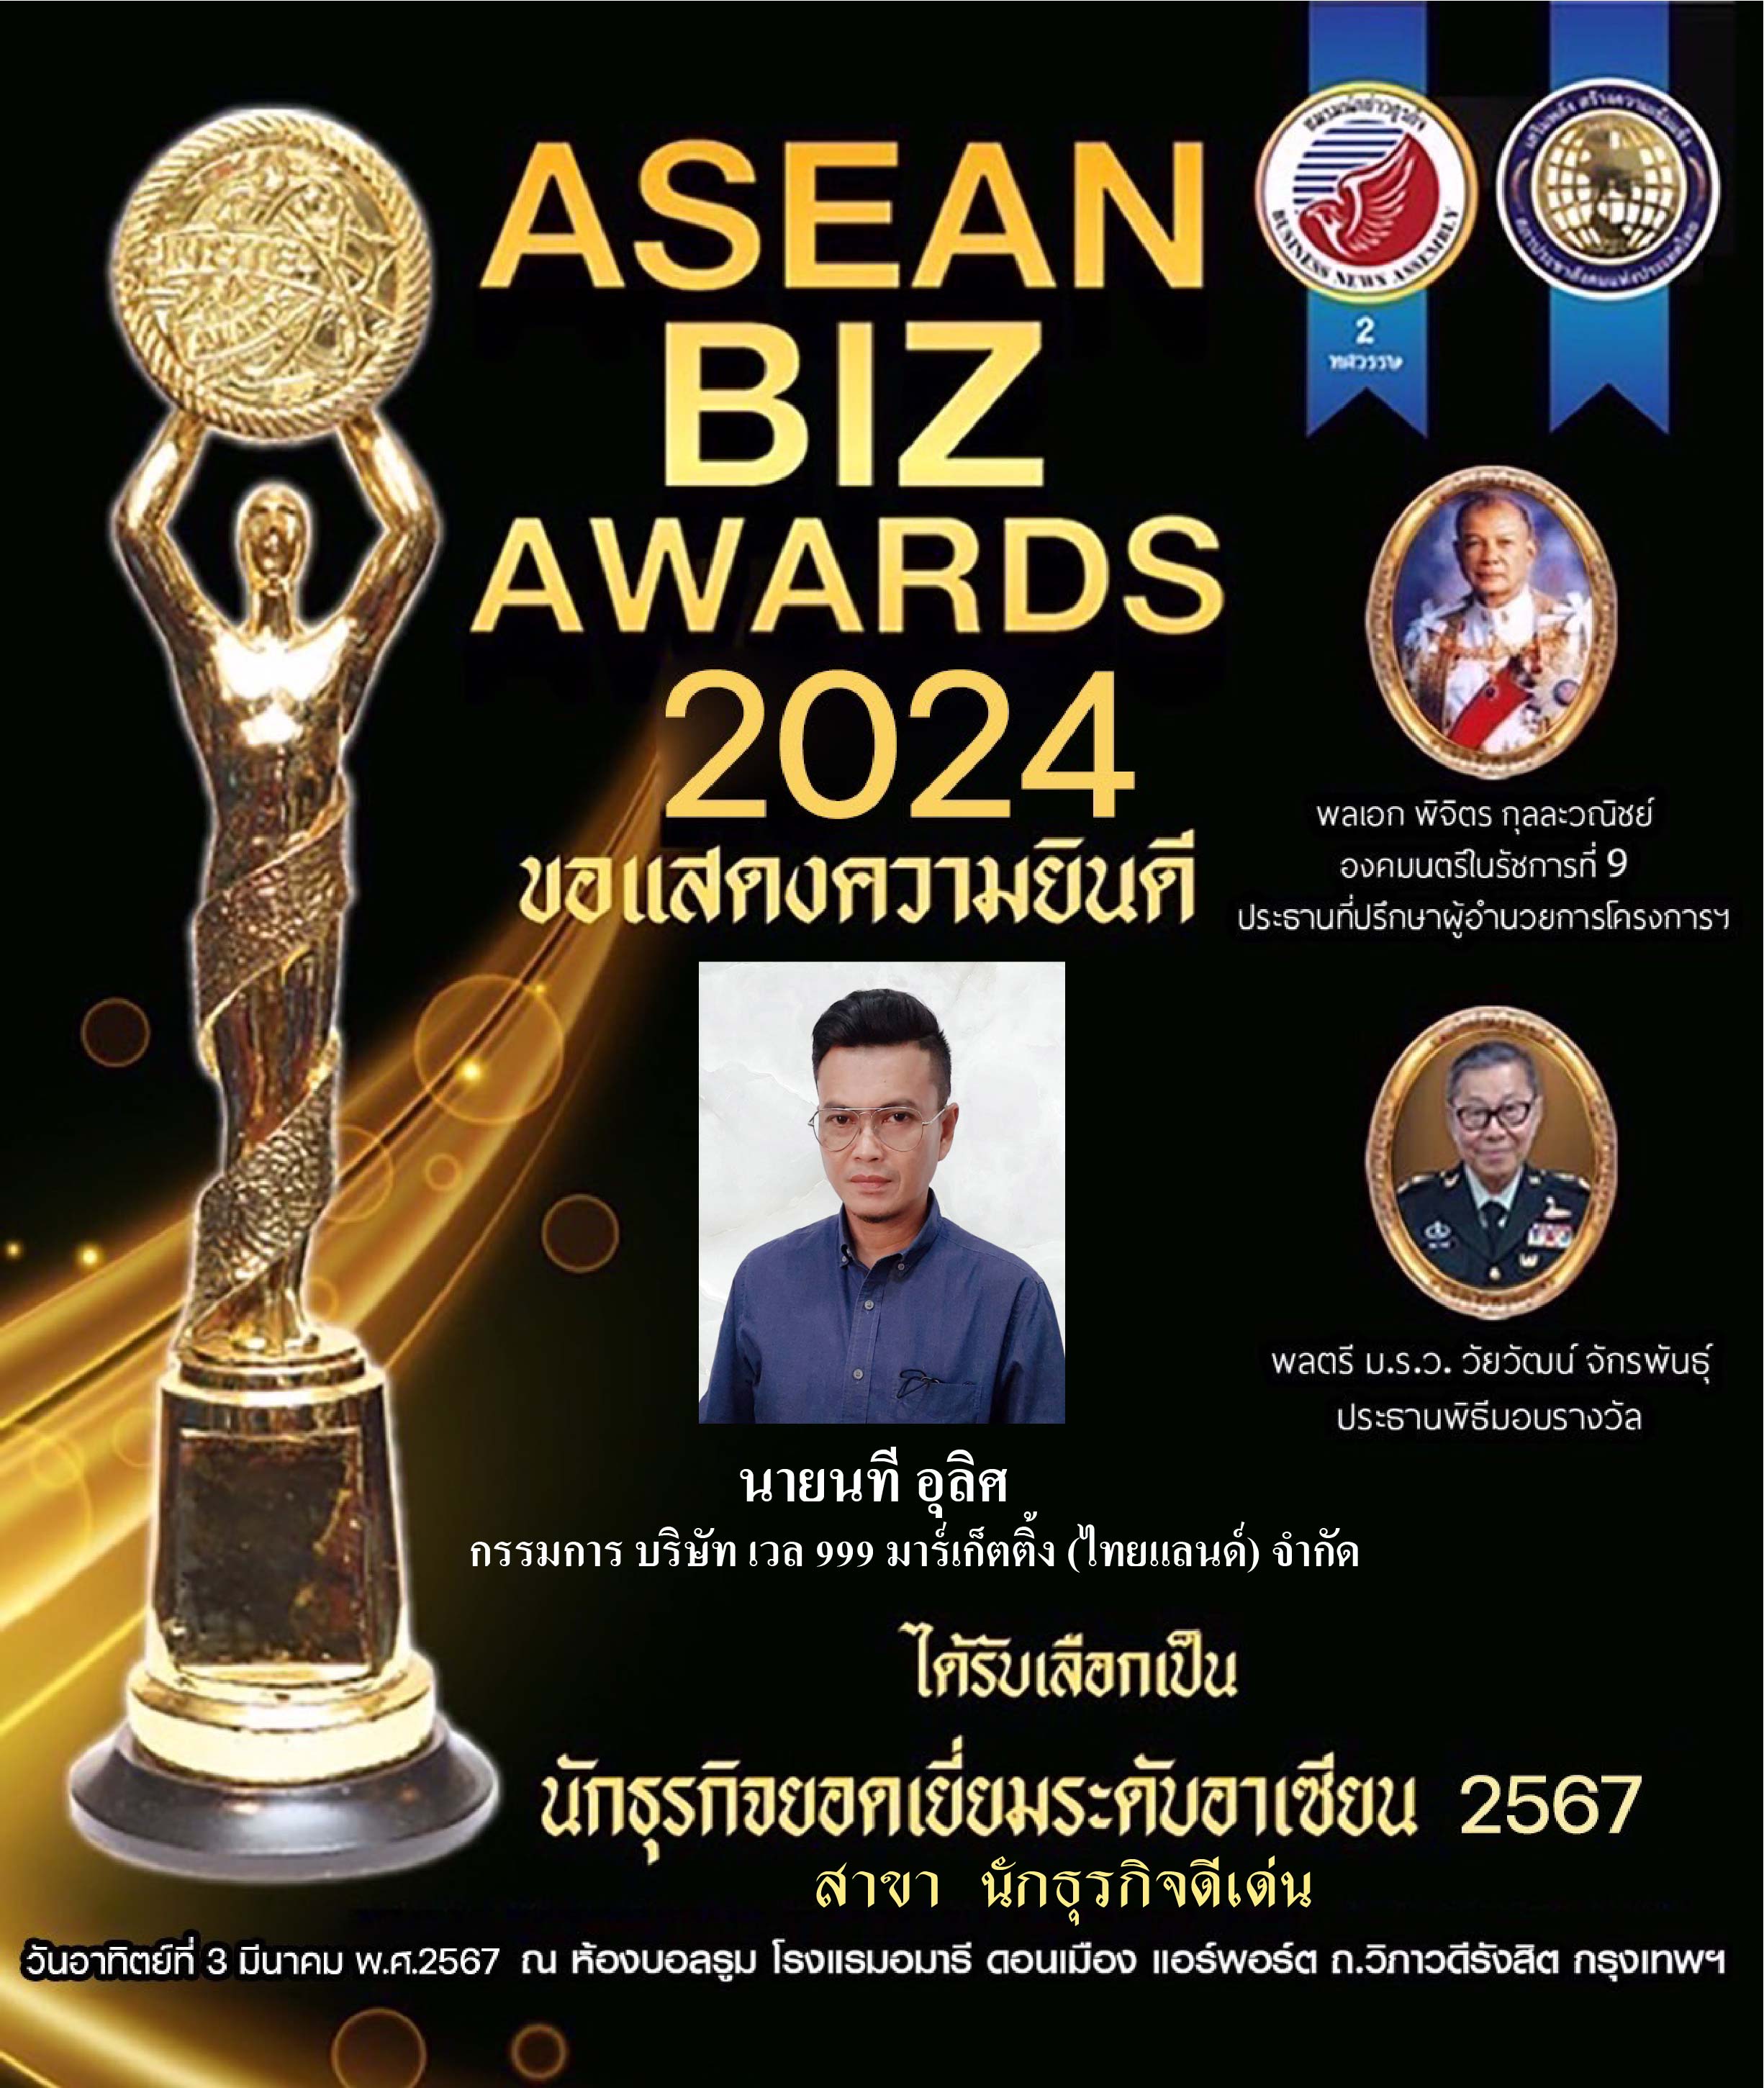 รับรางวัล ASEAN  BIZ  AWARDS  2024   คุณนที  อุลิศ    กรรมการ บริษัท เวล999 มาร์เก็ตติ้ง (ไทยแลนด์) จำกัด